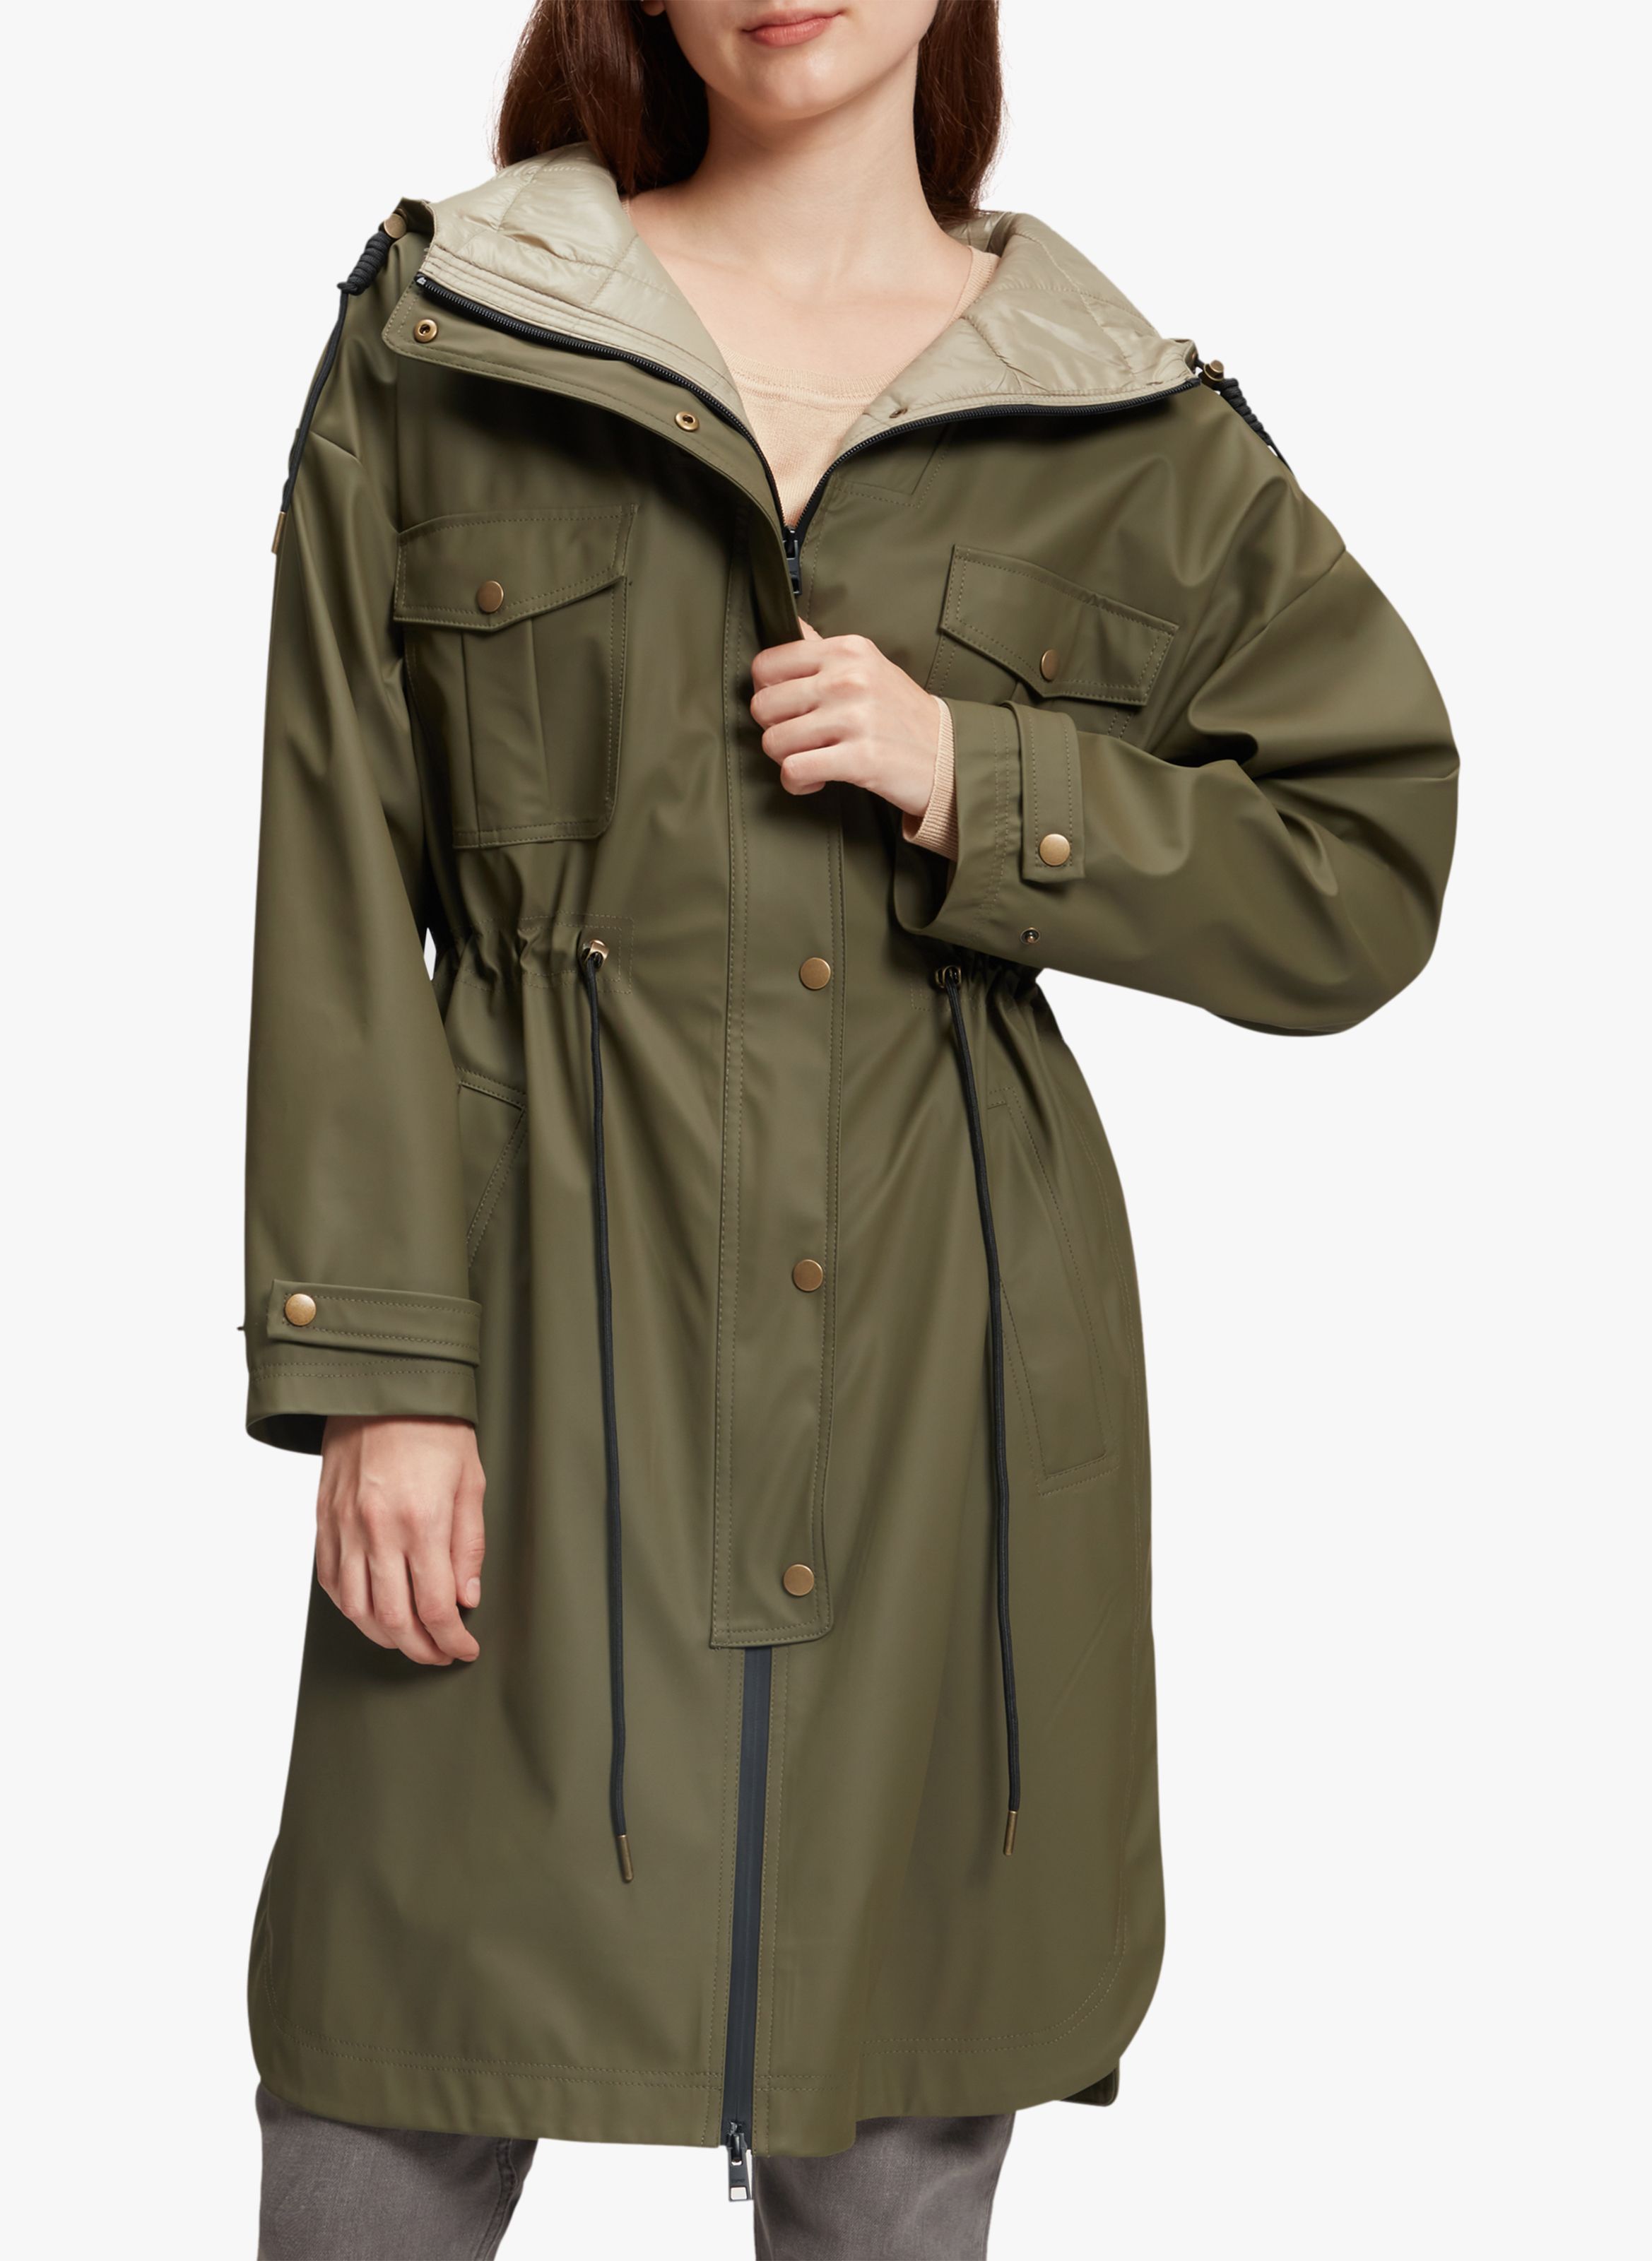 Femme Vêtements Manteaux Imperméables et trench coats Parka lins Synthétique Moncler en coloris Jaune 